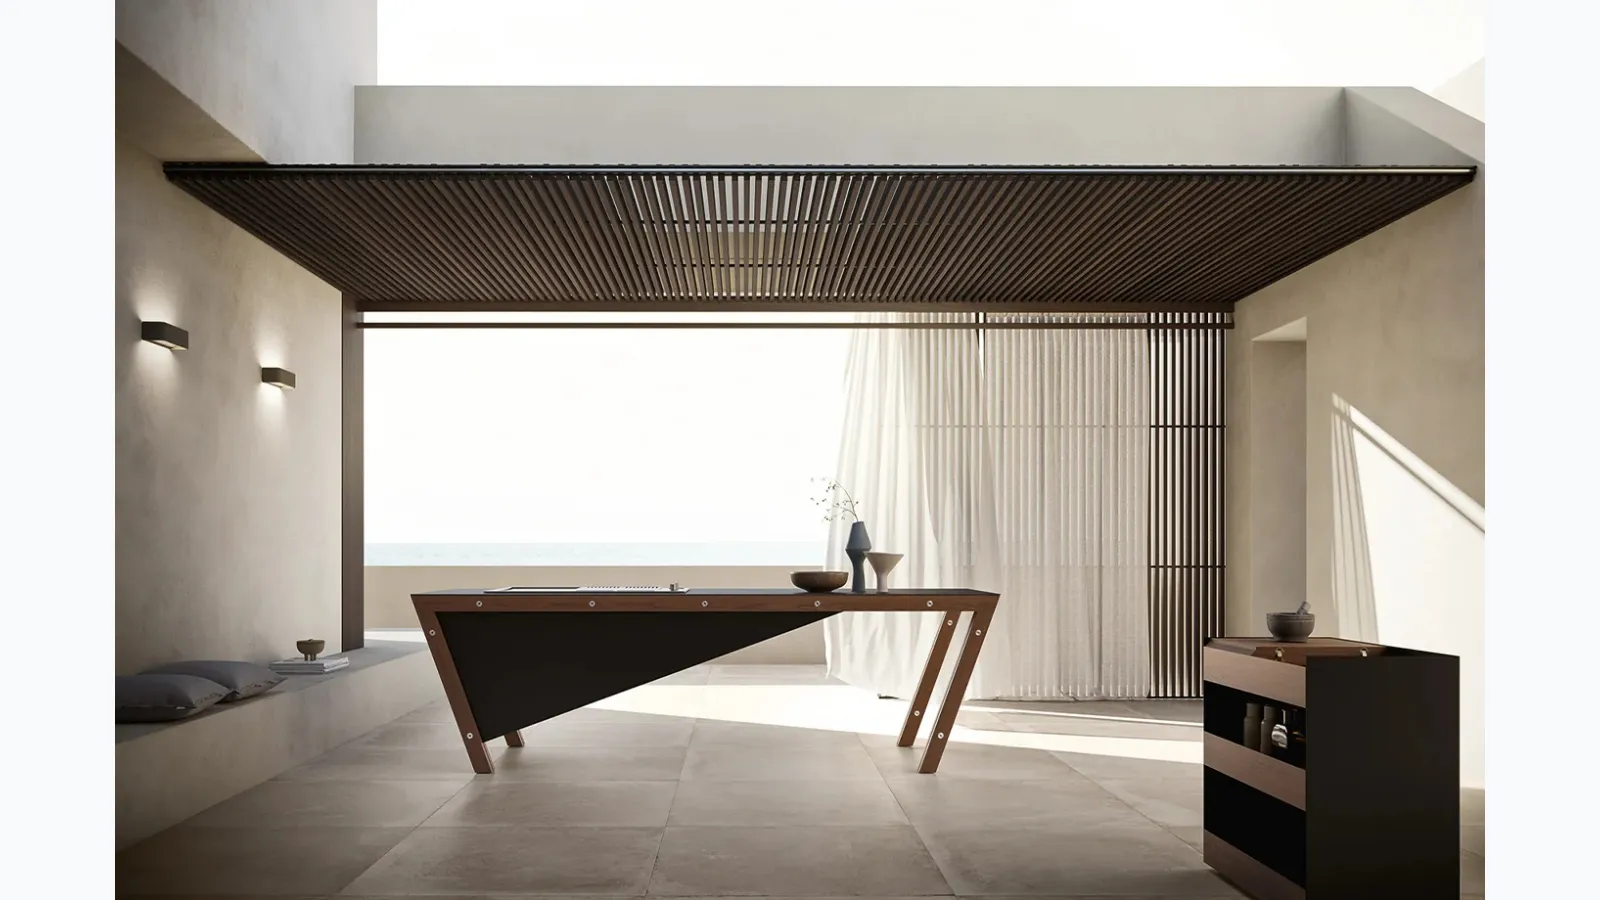 Cucina Design a isola in acciaio e legno con top in gres Project 07 di Modulnova